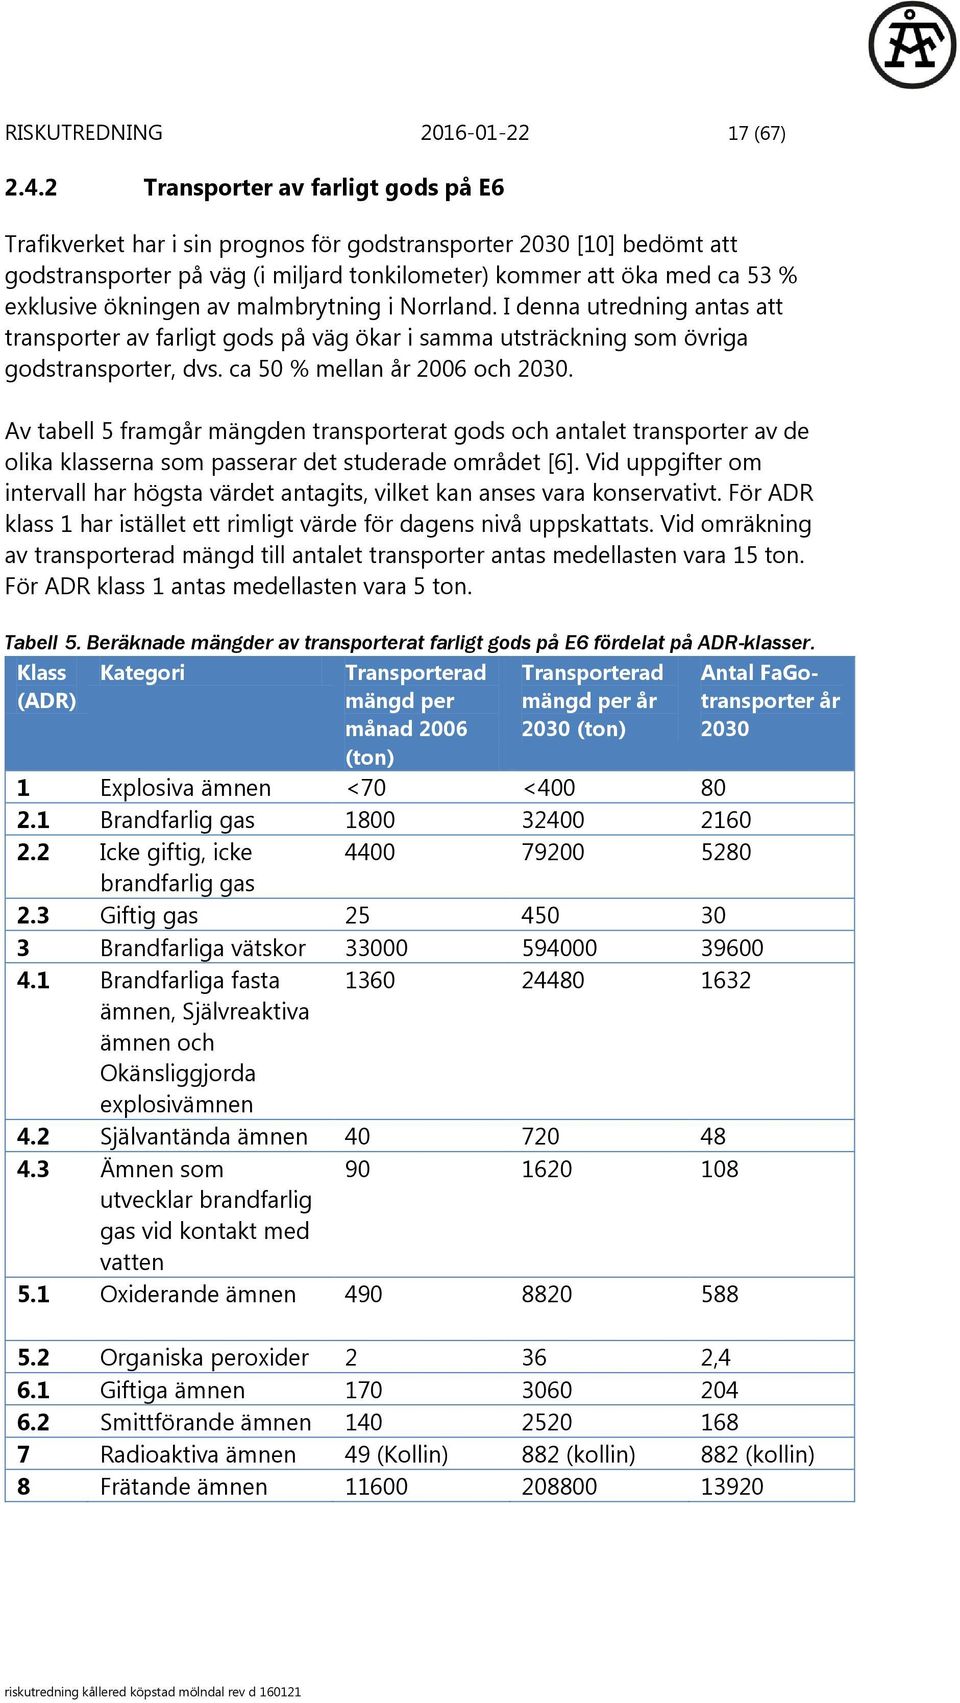 ökningen av malmbrytning i Norrland. I denna utredning antas att transporter av farligt gods på väg ökar i samma utsträckning som övriga godstransporter, dvs. ca 50 % mellan år 2006 och 2030.